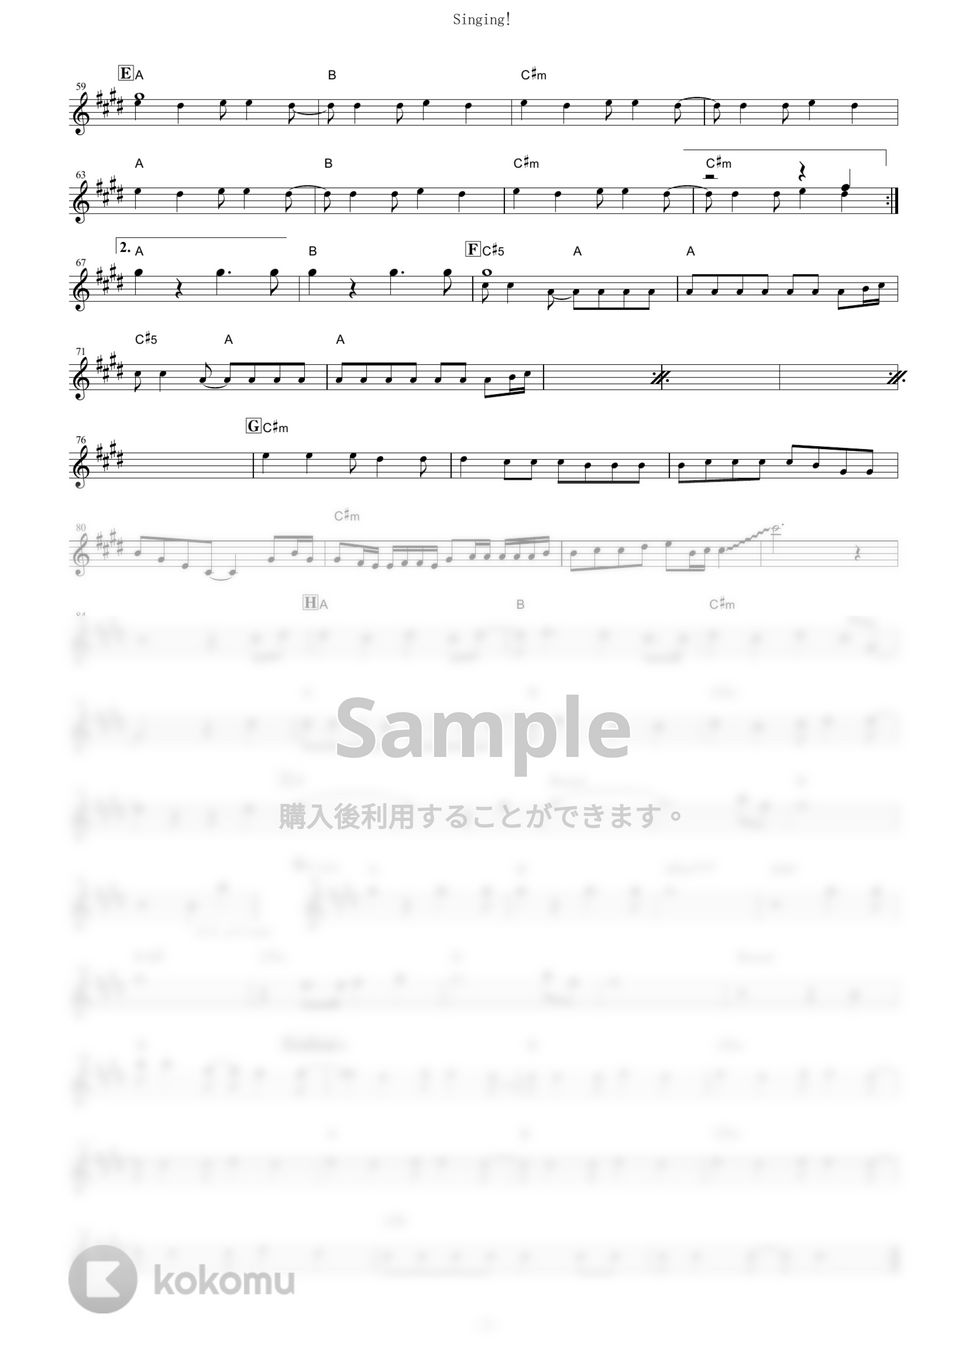 放課後ティータイム - Singing! (『映画けいおん！』 / in Eb) by muta-sax